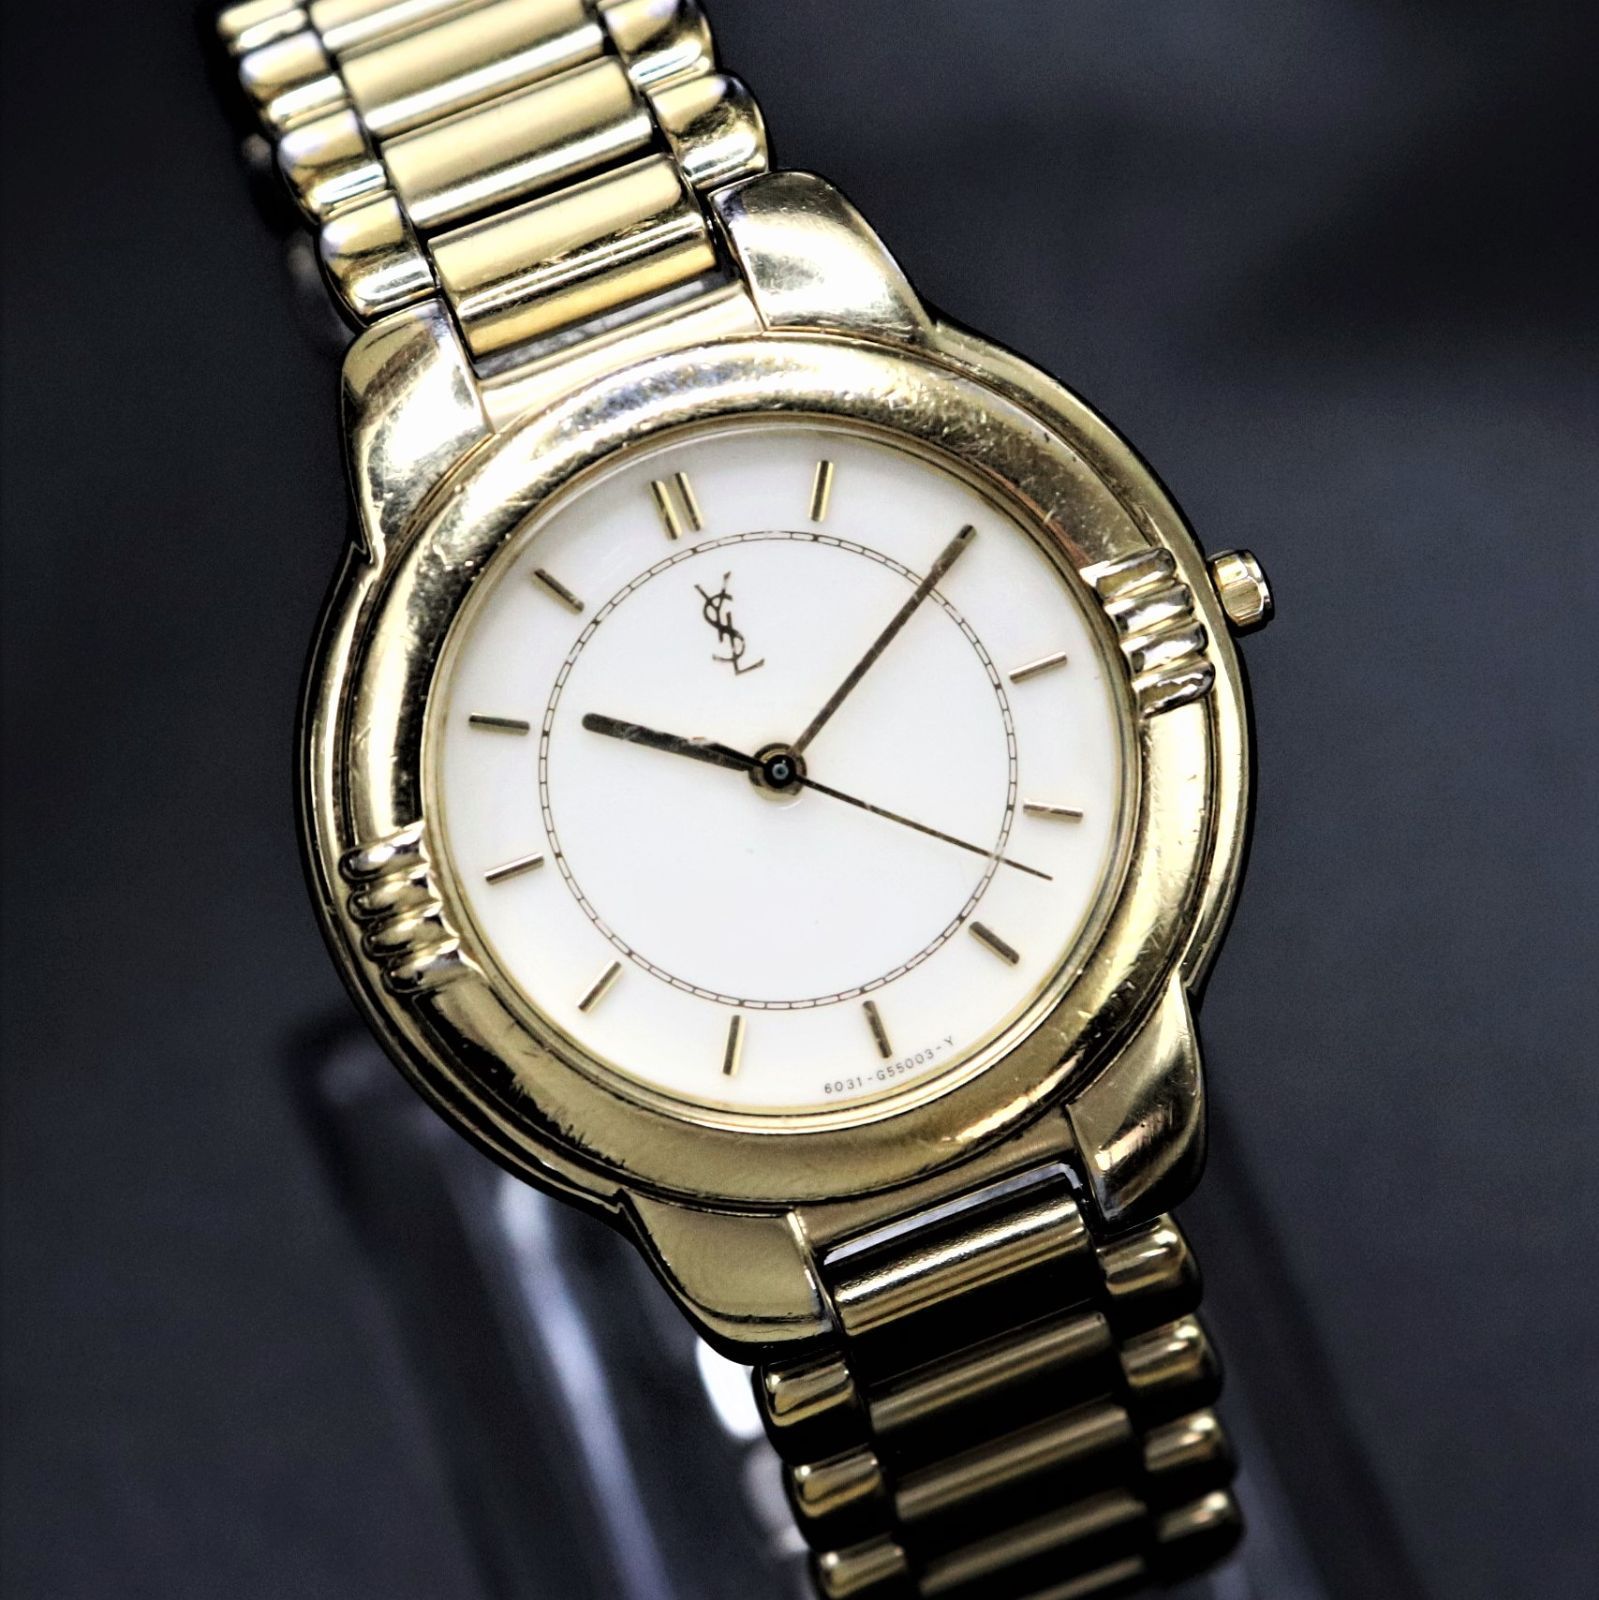 【電池交換済】Yves Saint Laurent 腕時計 ゴールド ラウンド